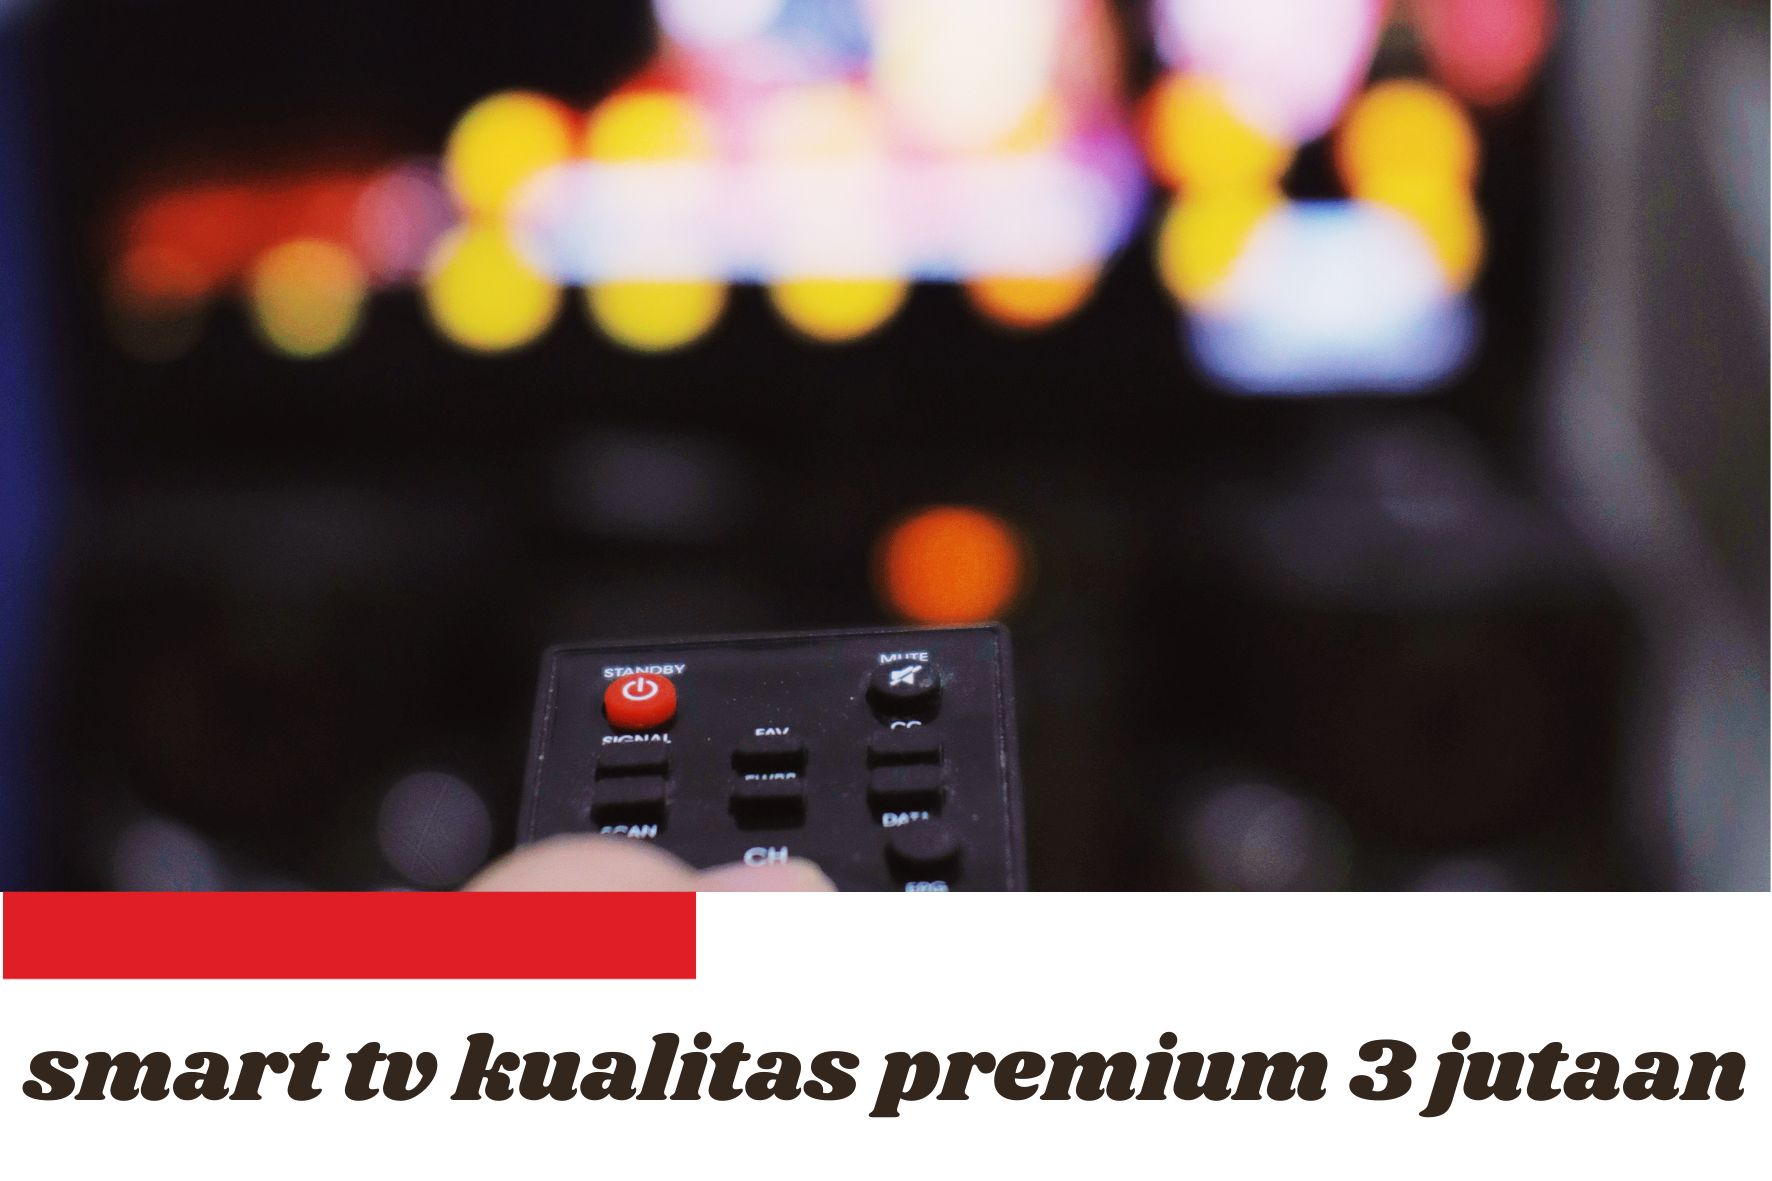 Rekomendasi Merk Smart TV Kualitas Premium 3 Jutaan, Harga Murah tapi Gak Murahan